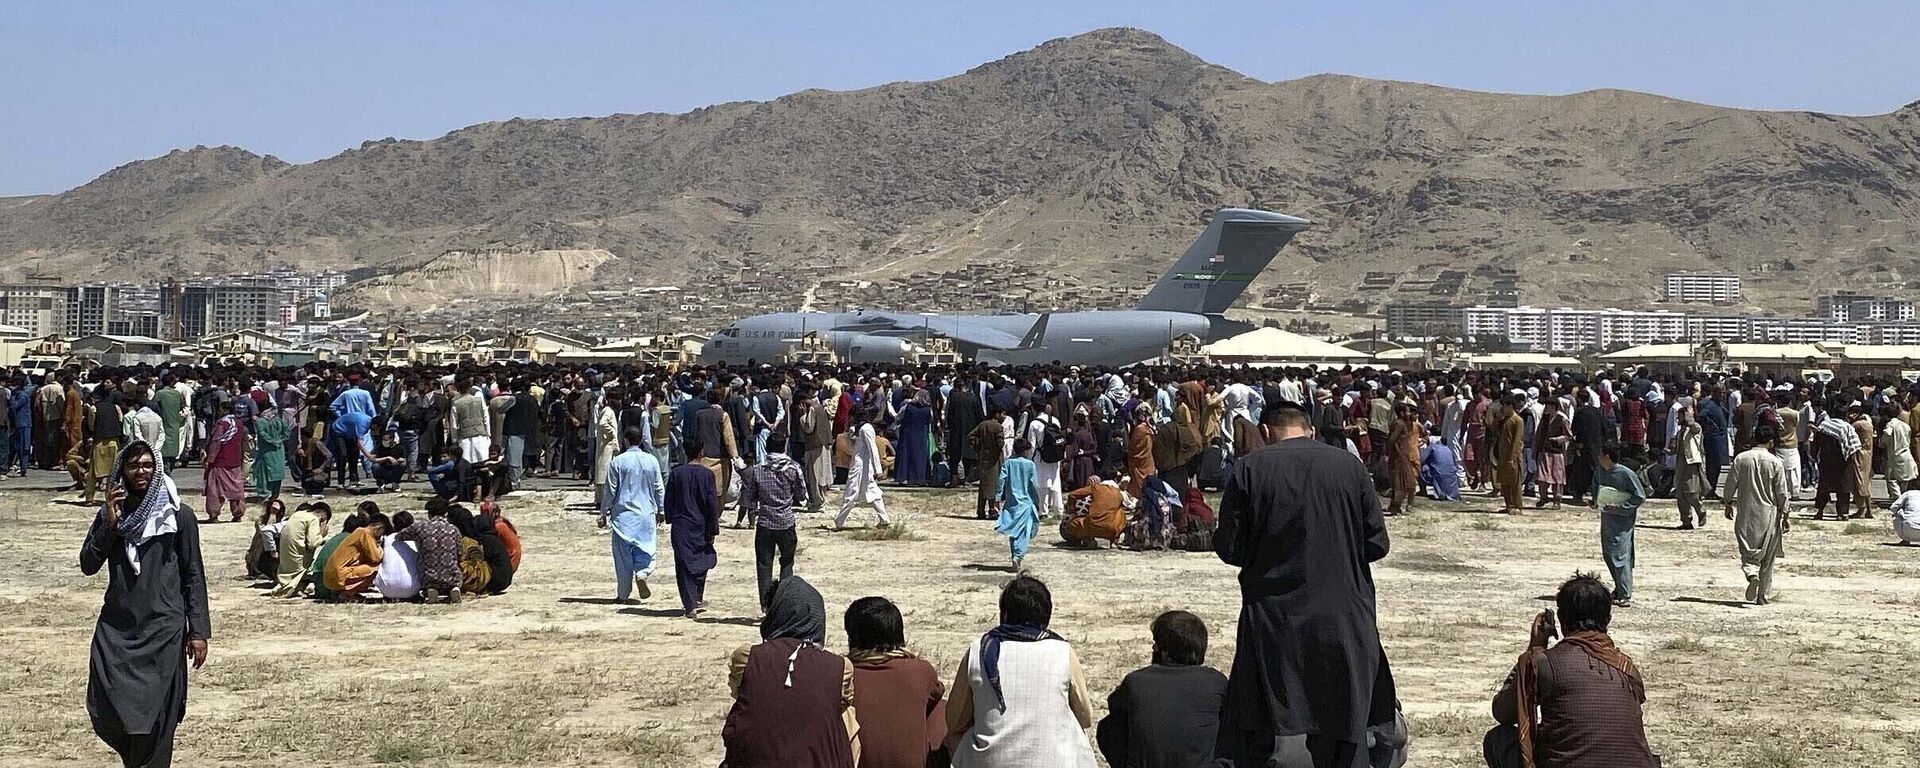 في 16 أغسطس 2021، صورة ملف تجمع مئات الأشخاص بالقرب من طائرة نقل تابعة للقوات الجوية الأمريكية من طراز سي-17، على طول محيط المطار الدولي في كابول، أفغانستان. - سبوتنيك عربي, 1920, 31.08.2021